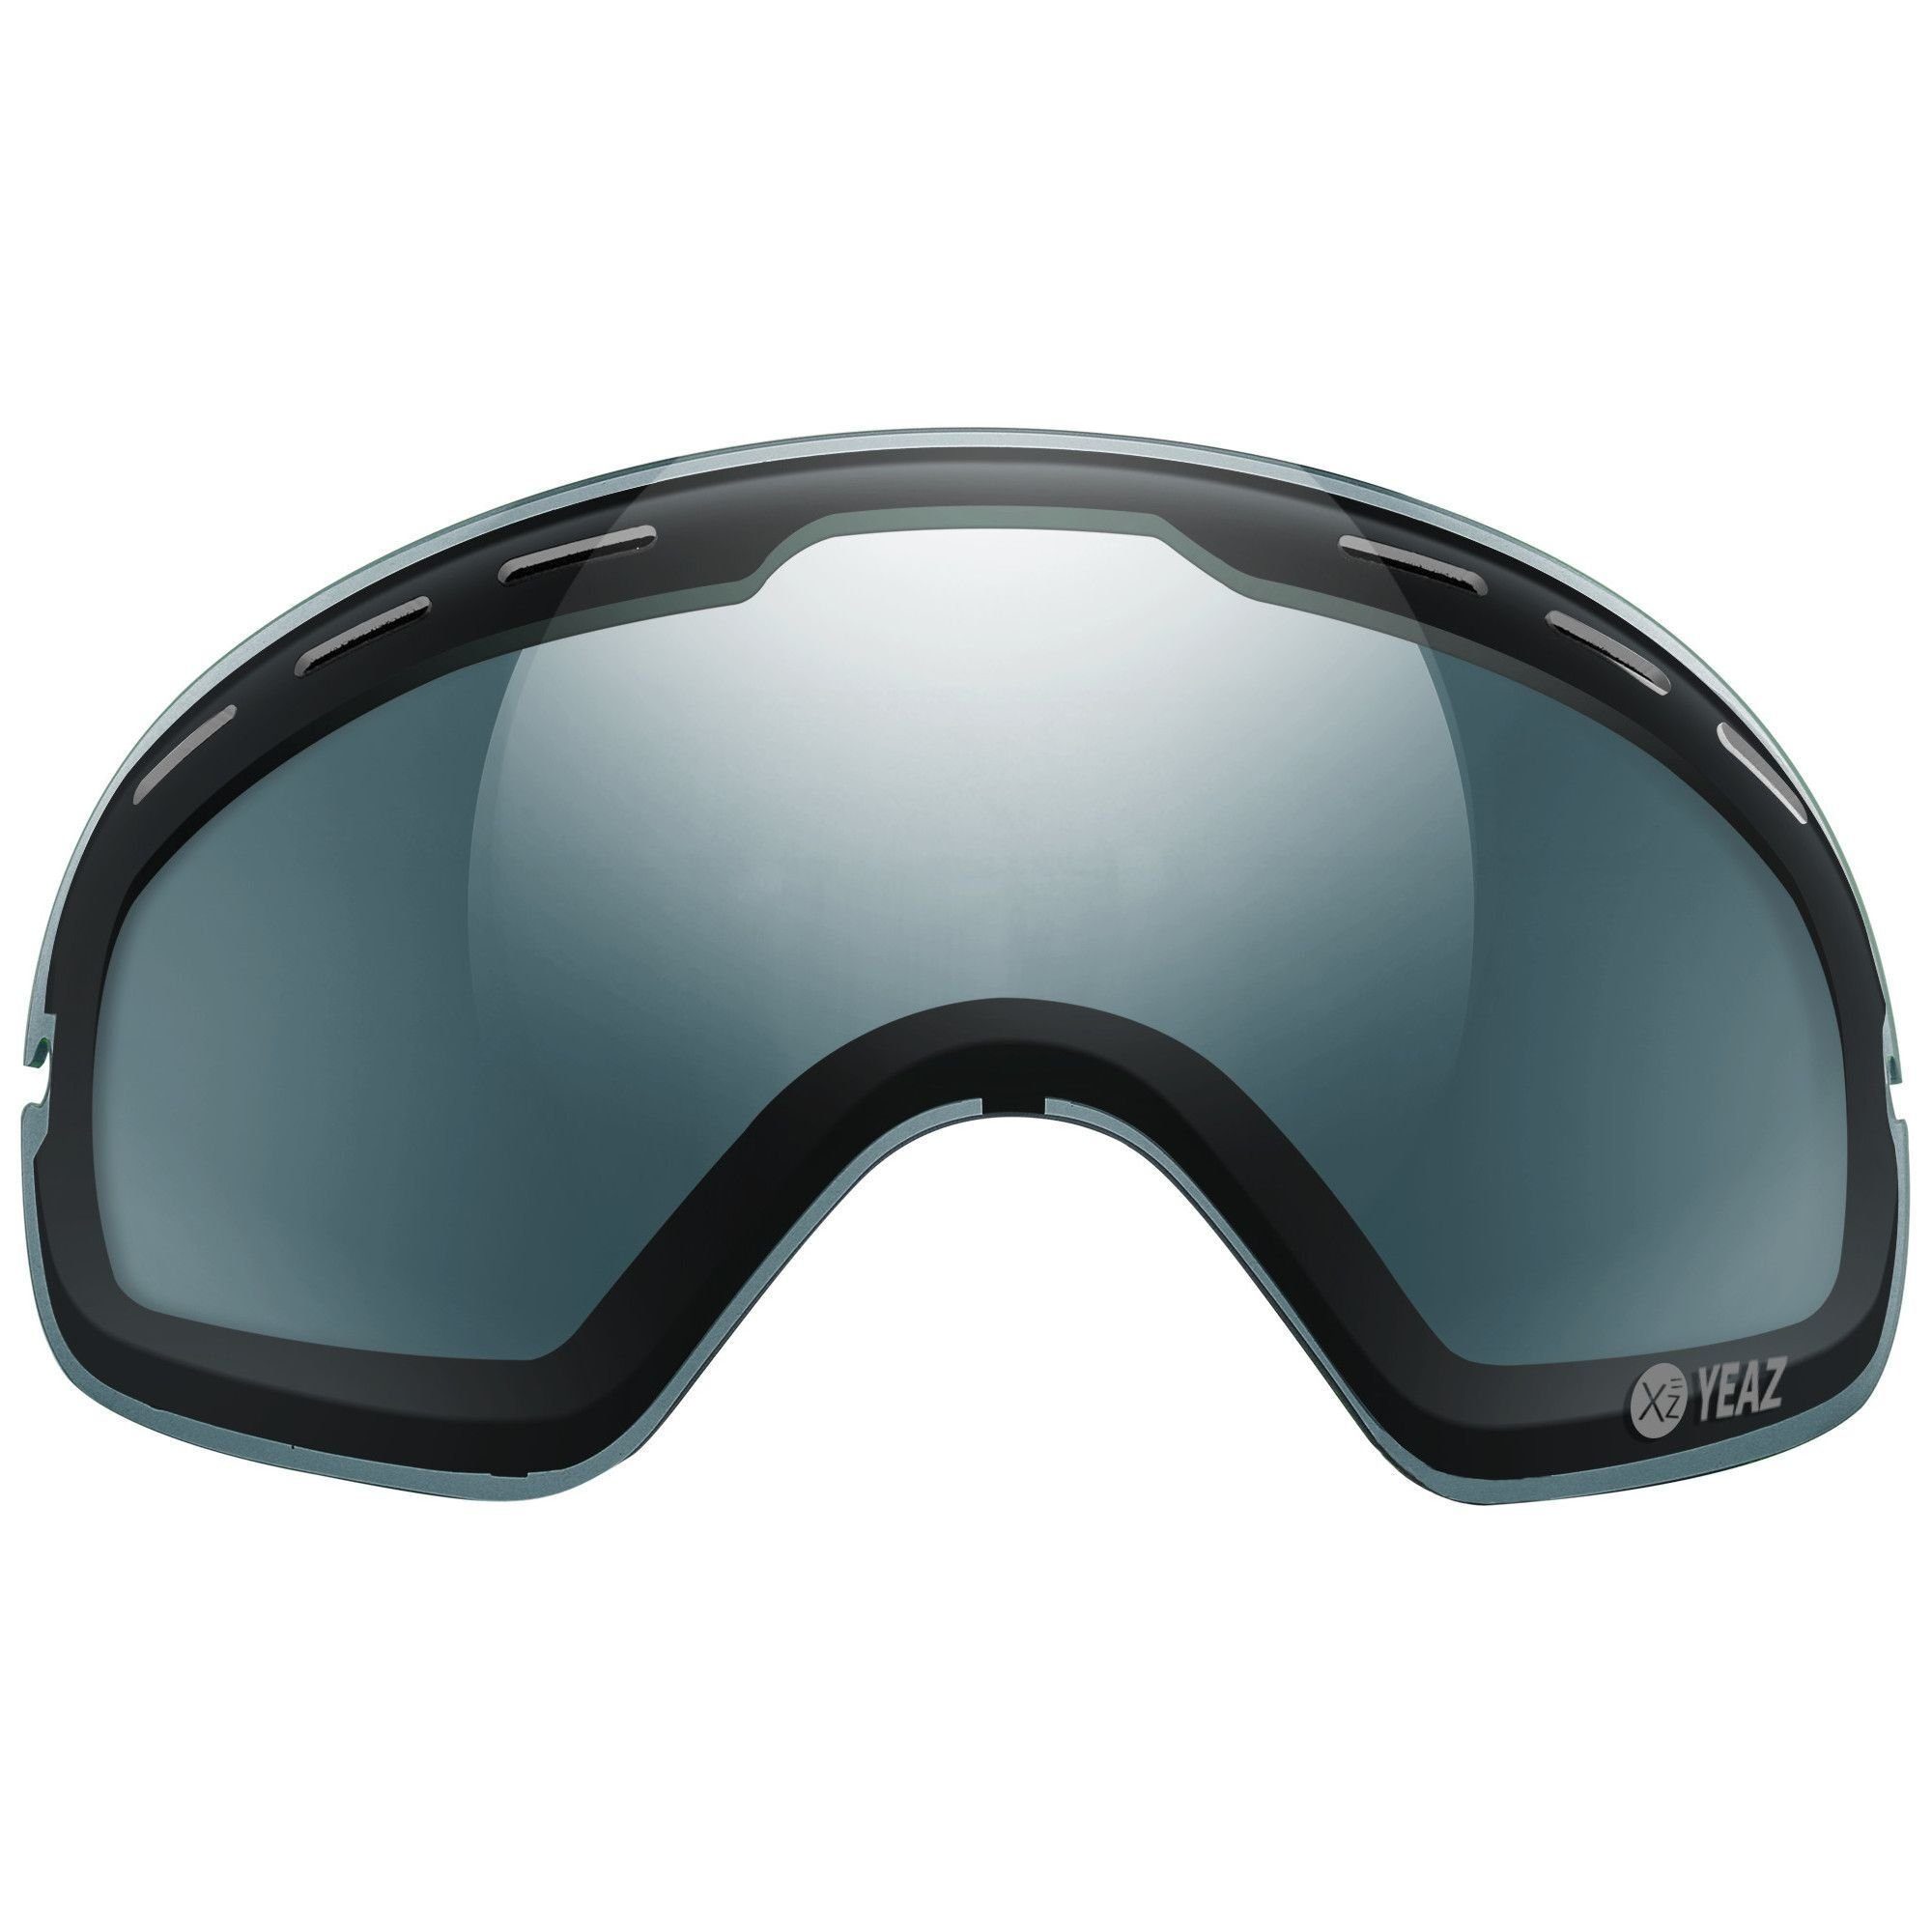 für YEAZ Skibrille polarisiertes XTRM-SUMMIT ohne Skibrille ohne Wechselglas rahmen, Rahmen wechselglas, XTRM-SUMMIT